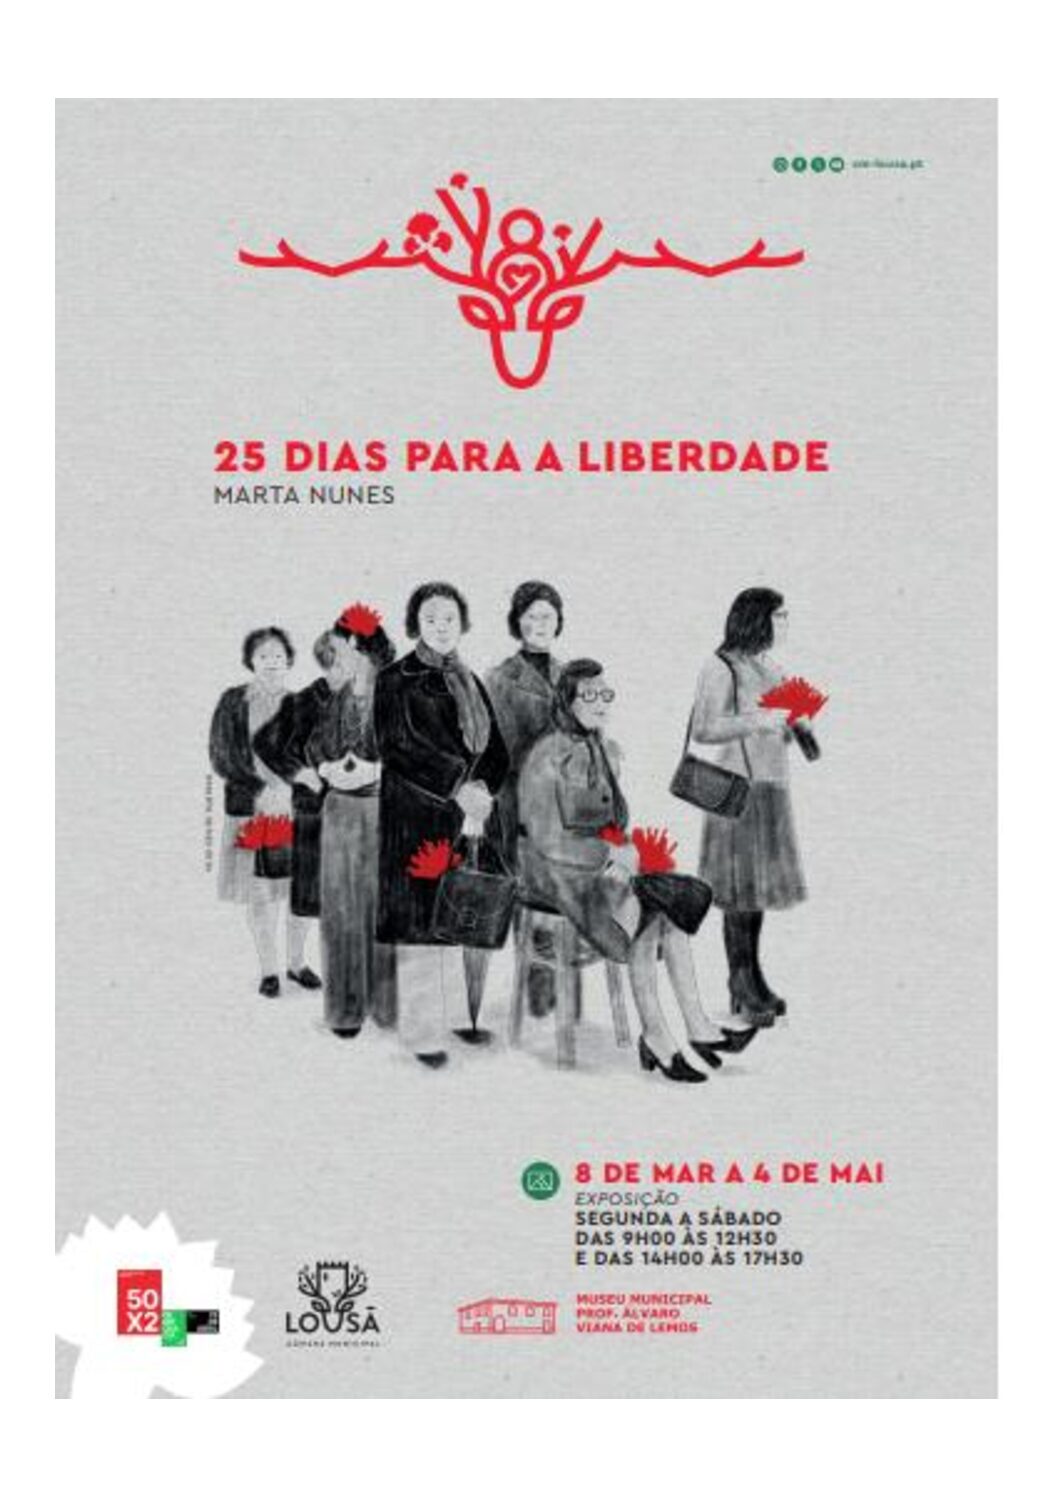 Capa Oficial do Evento 25 DIAS PARA A LIBERDADE de Marta Nunes